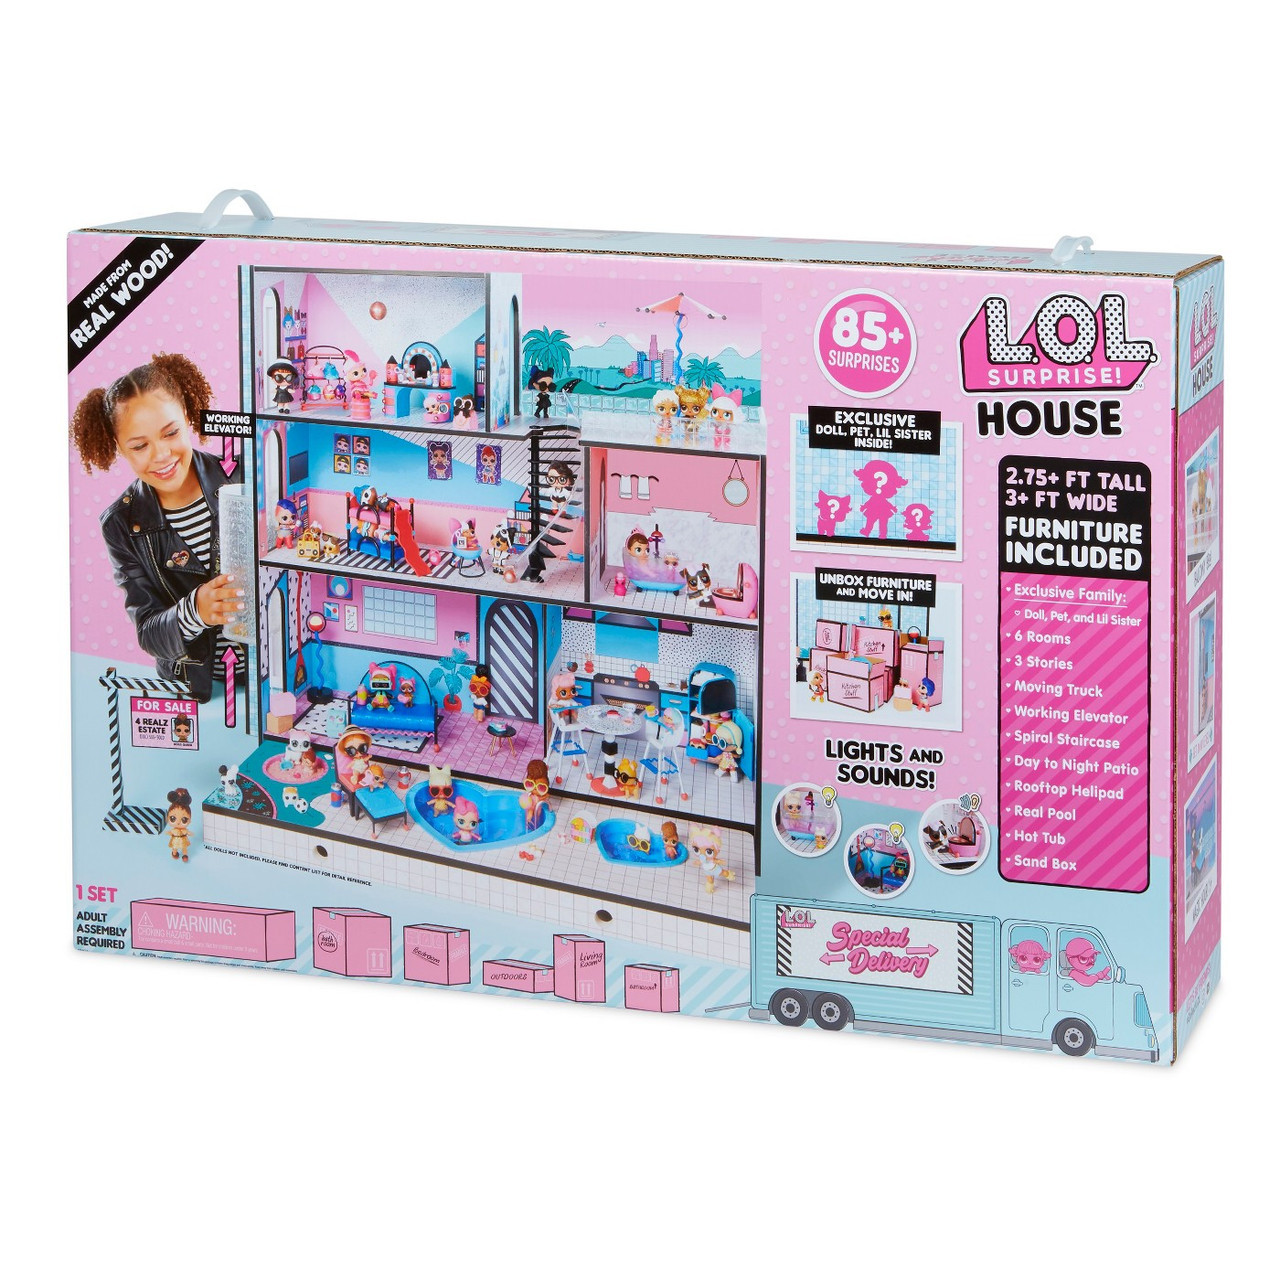 Будинок для ляльок лол у кредит Модний особняк L.O.L Surprise House Ляльковий будиночок L.O.L. Surprise